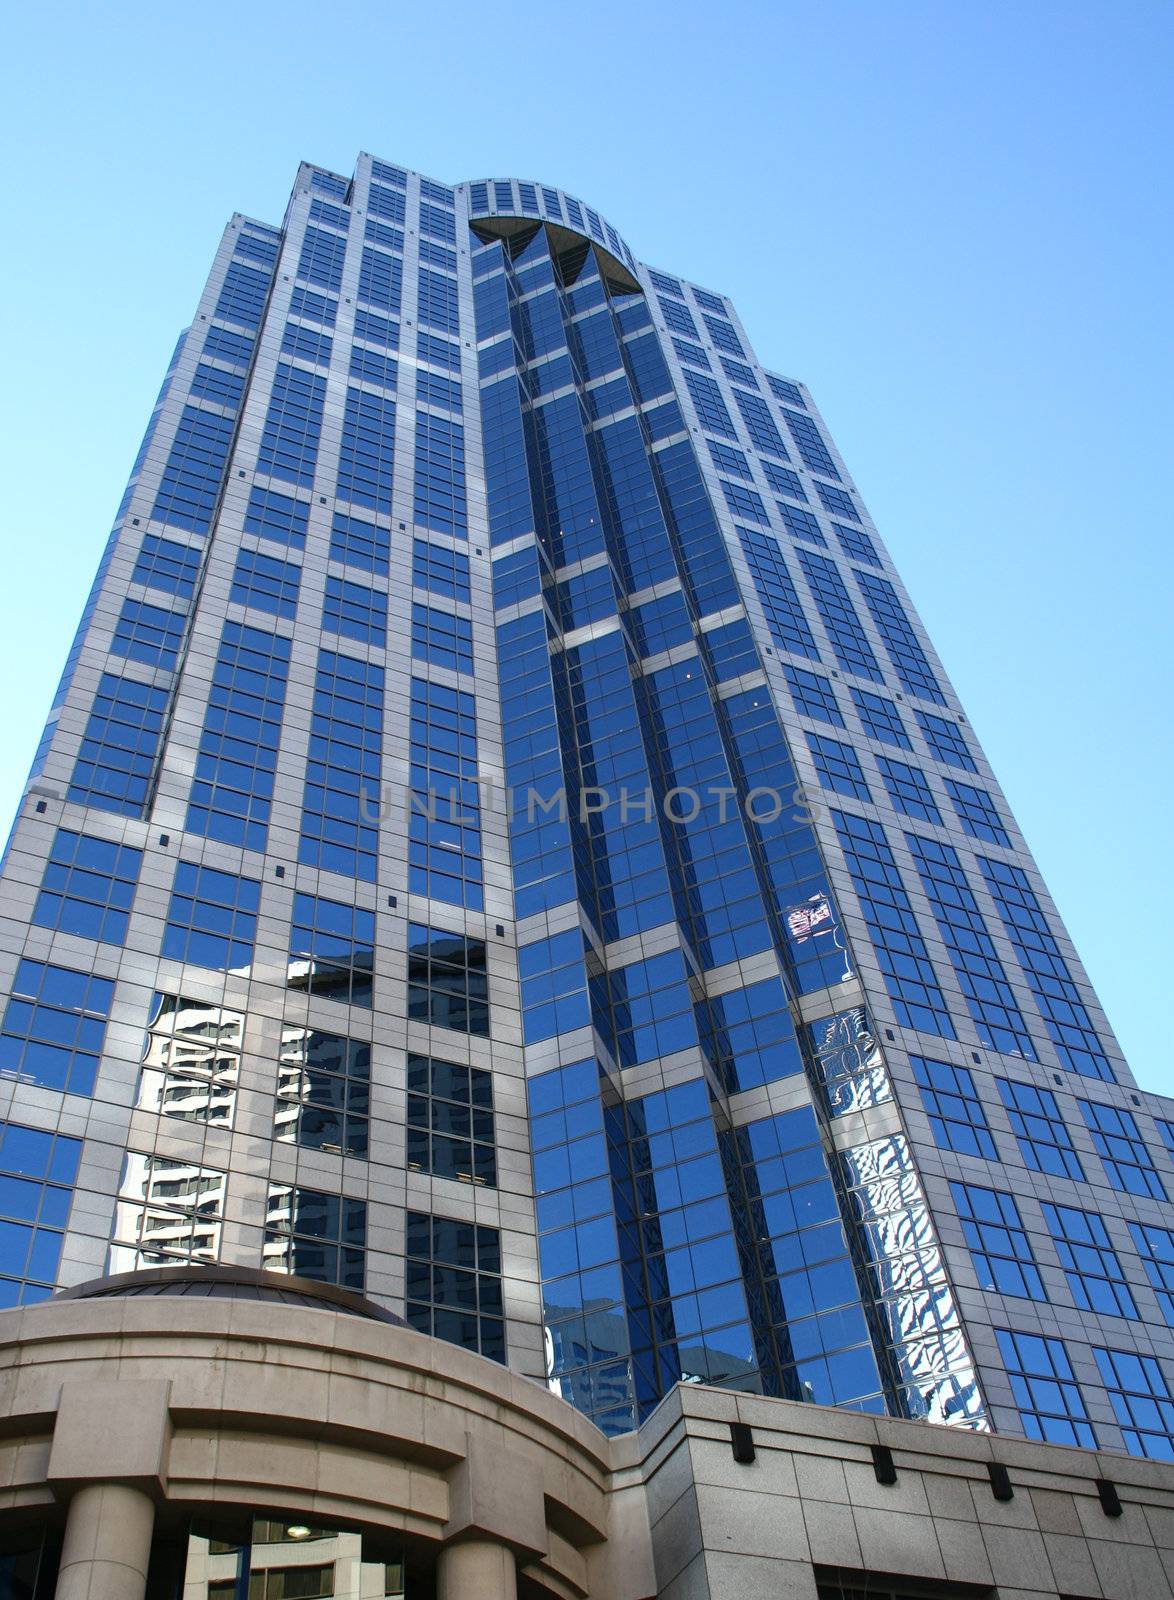 Seattle skyscraper by LoonChild